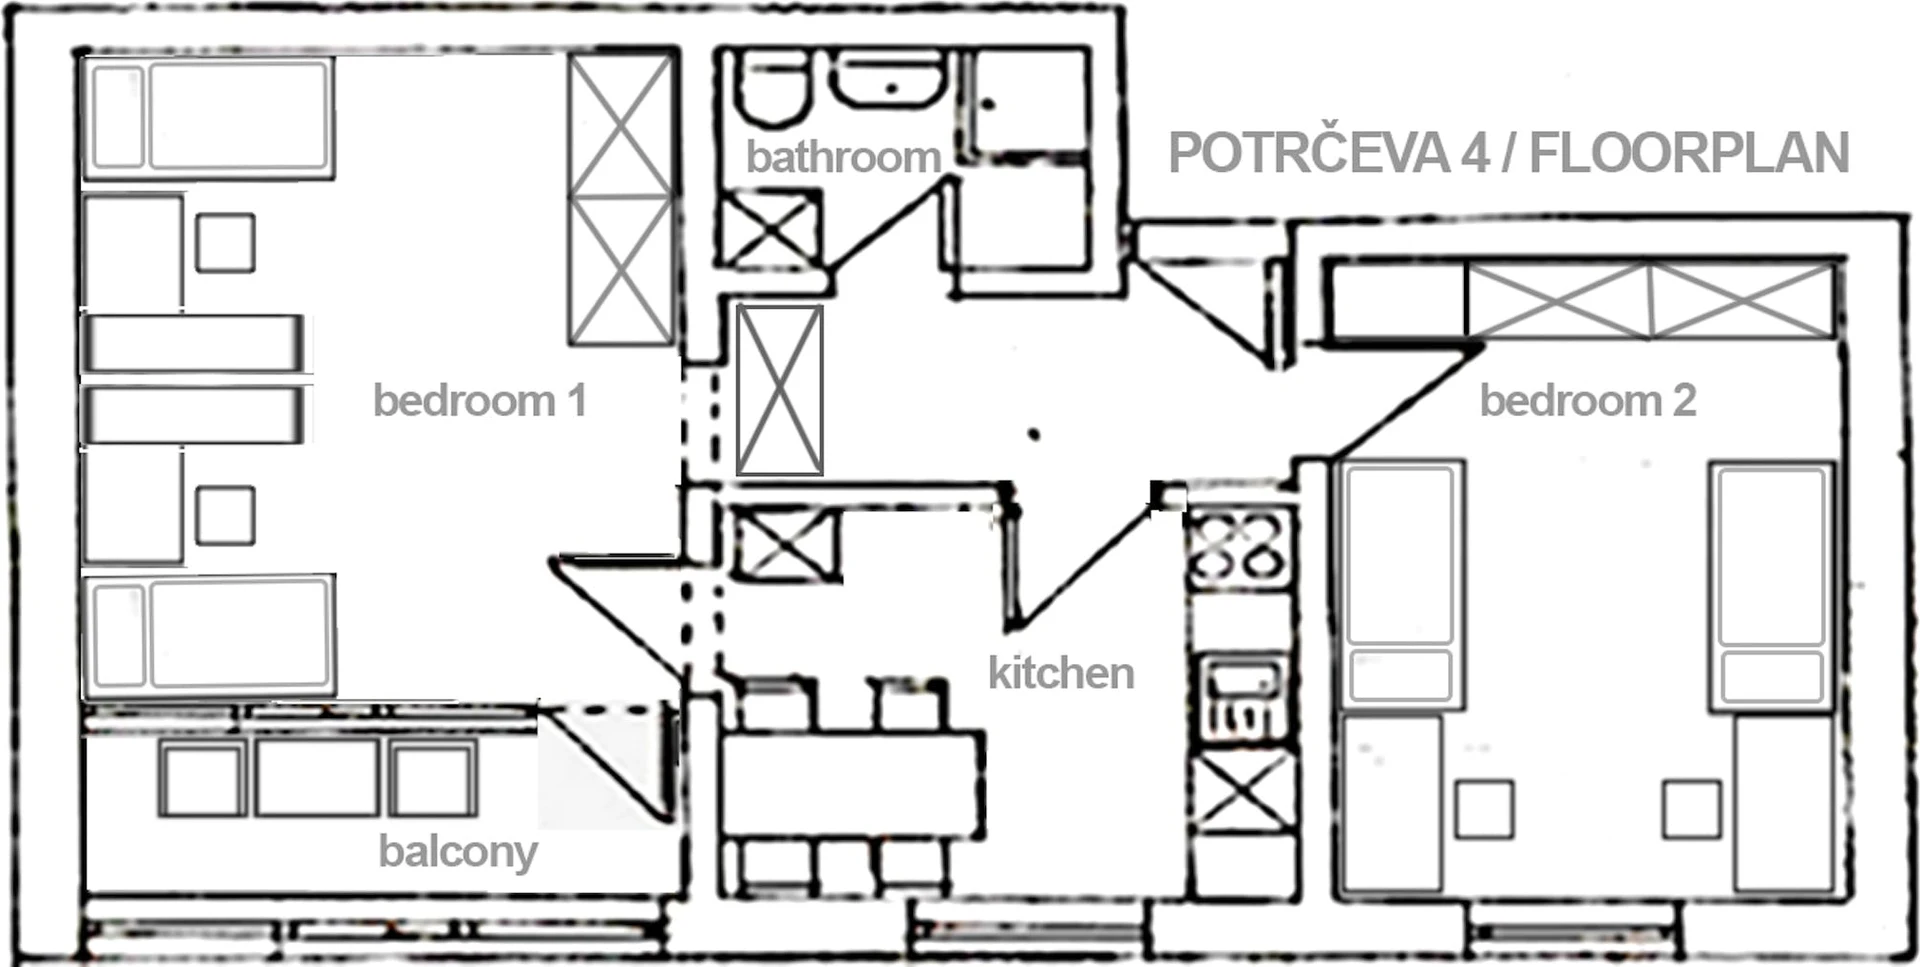 Chambre à louer dans un appartement en colocation à Ljubljana